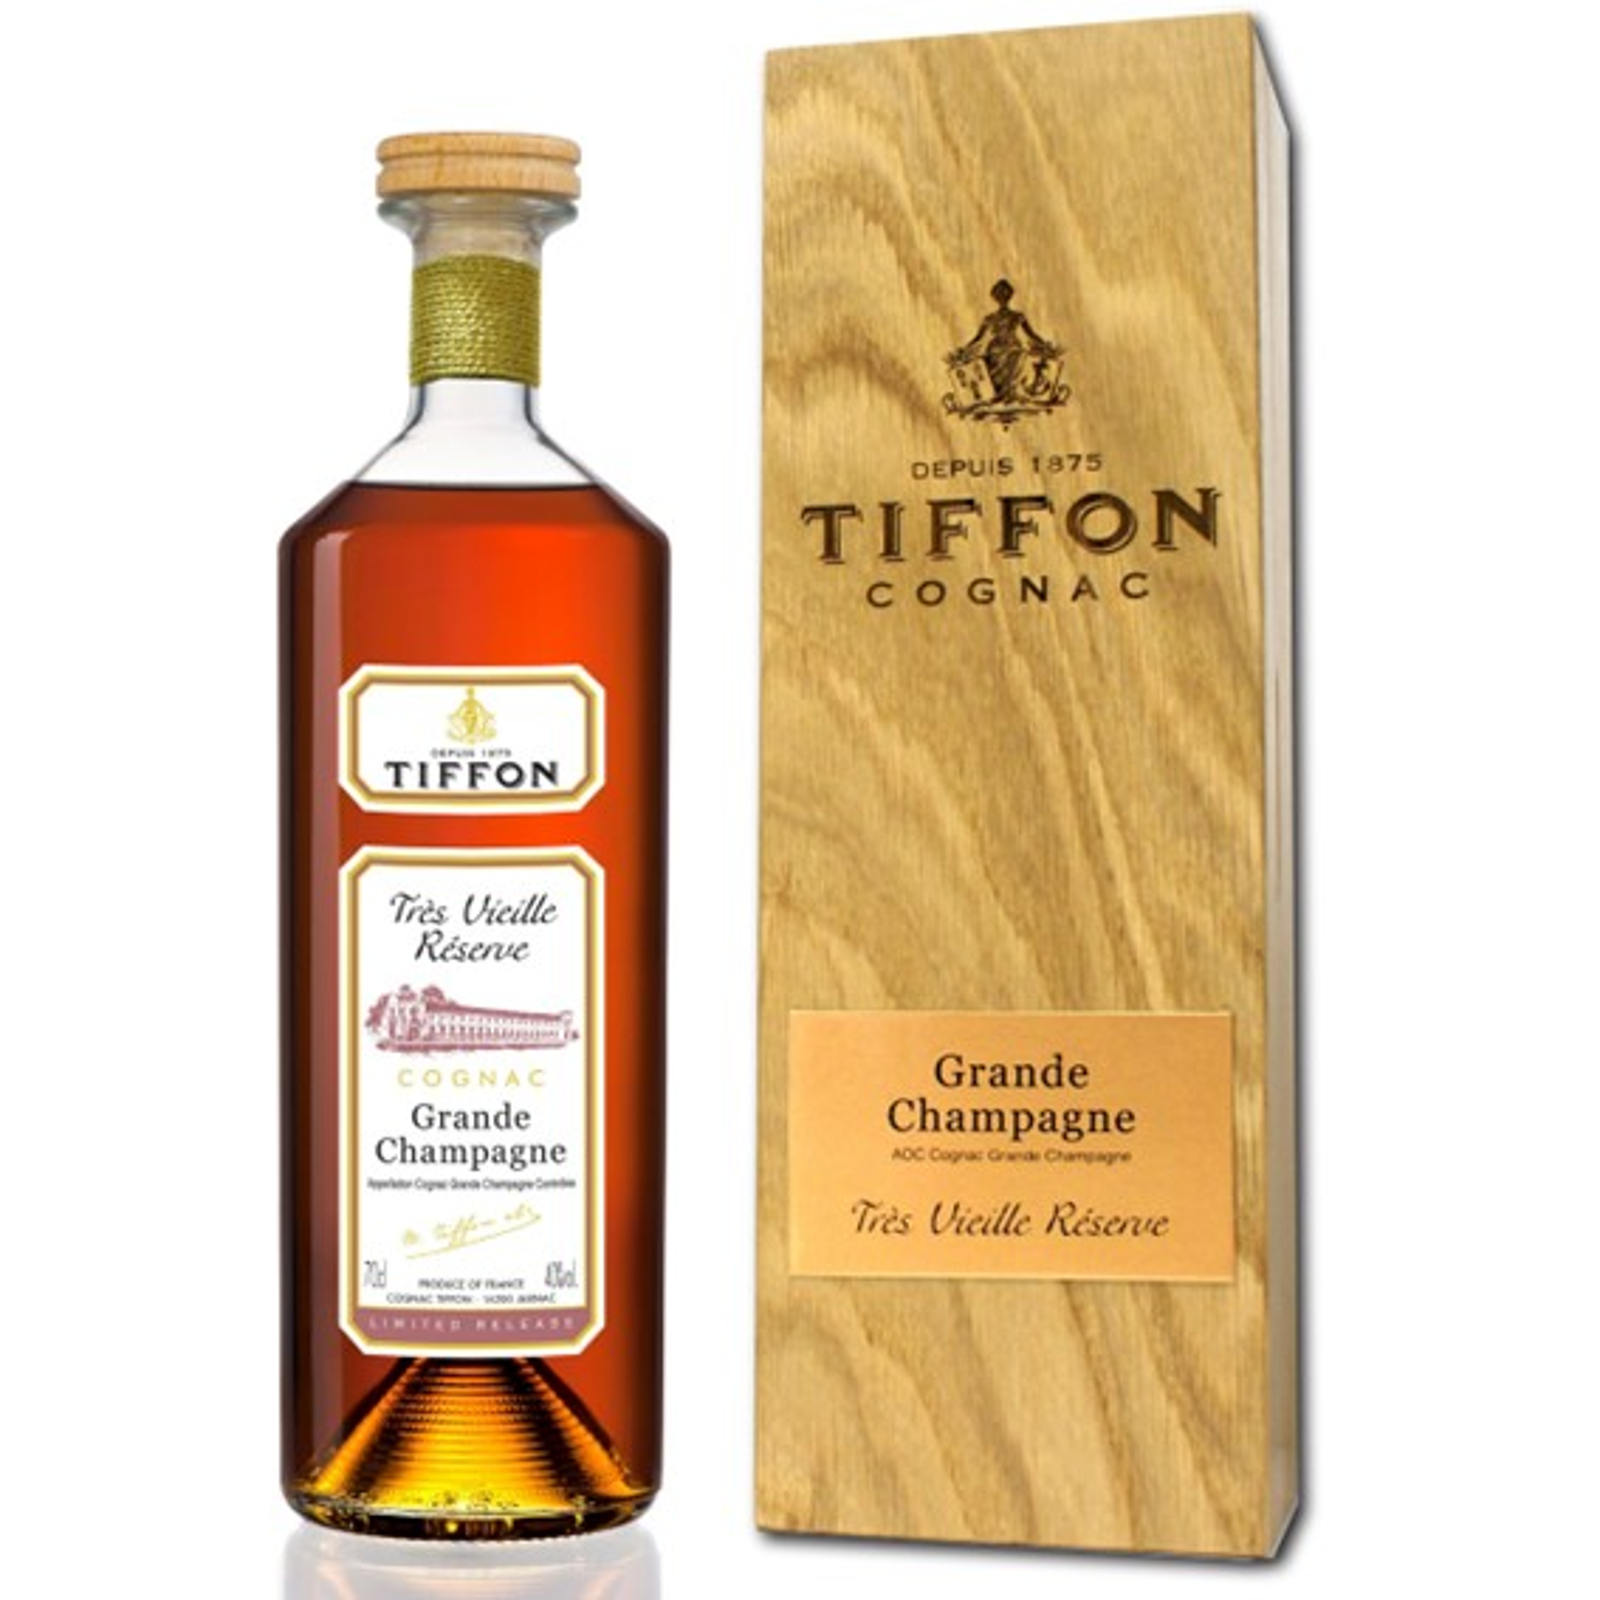 Tiffon Chateau Triac Single Cru Grande Champagne Cognac – France